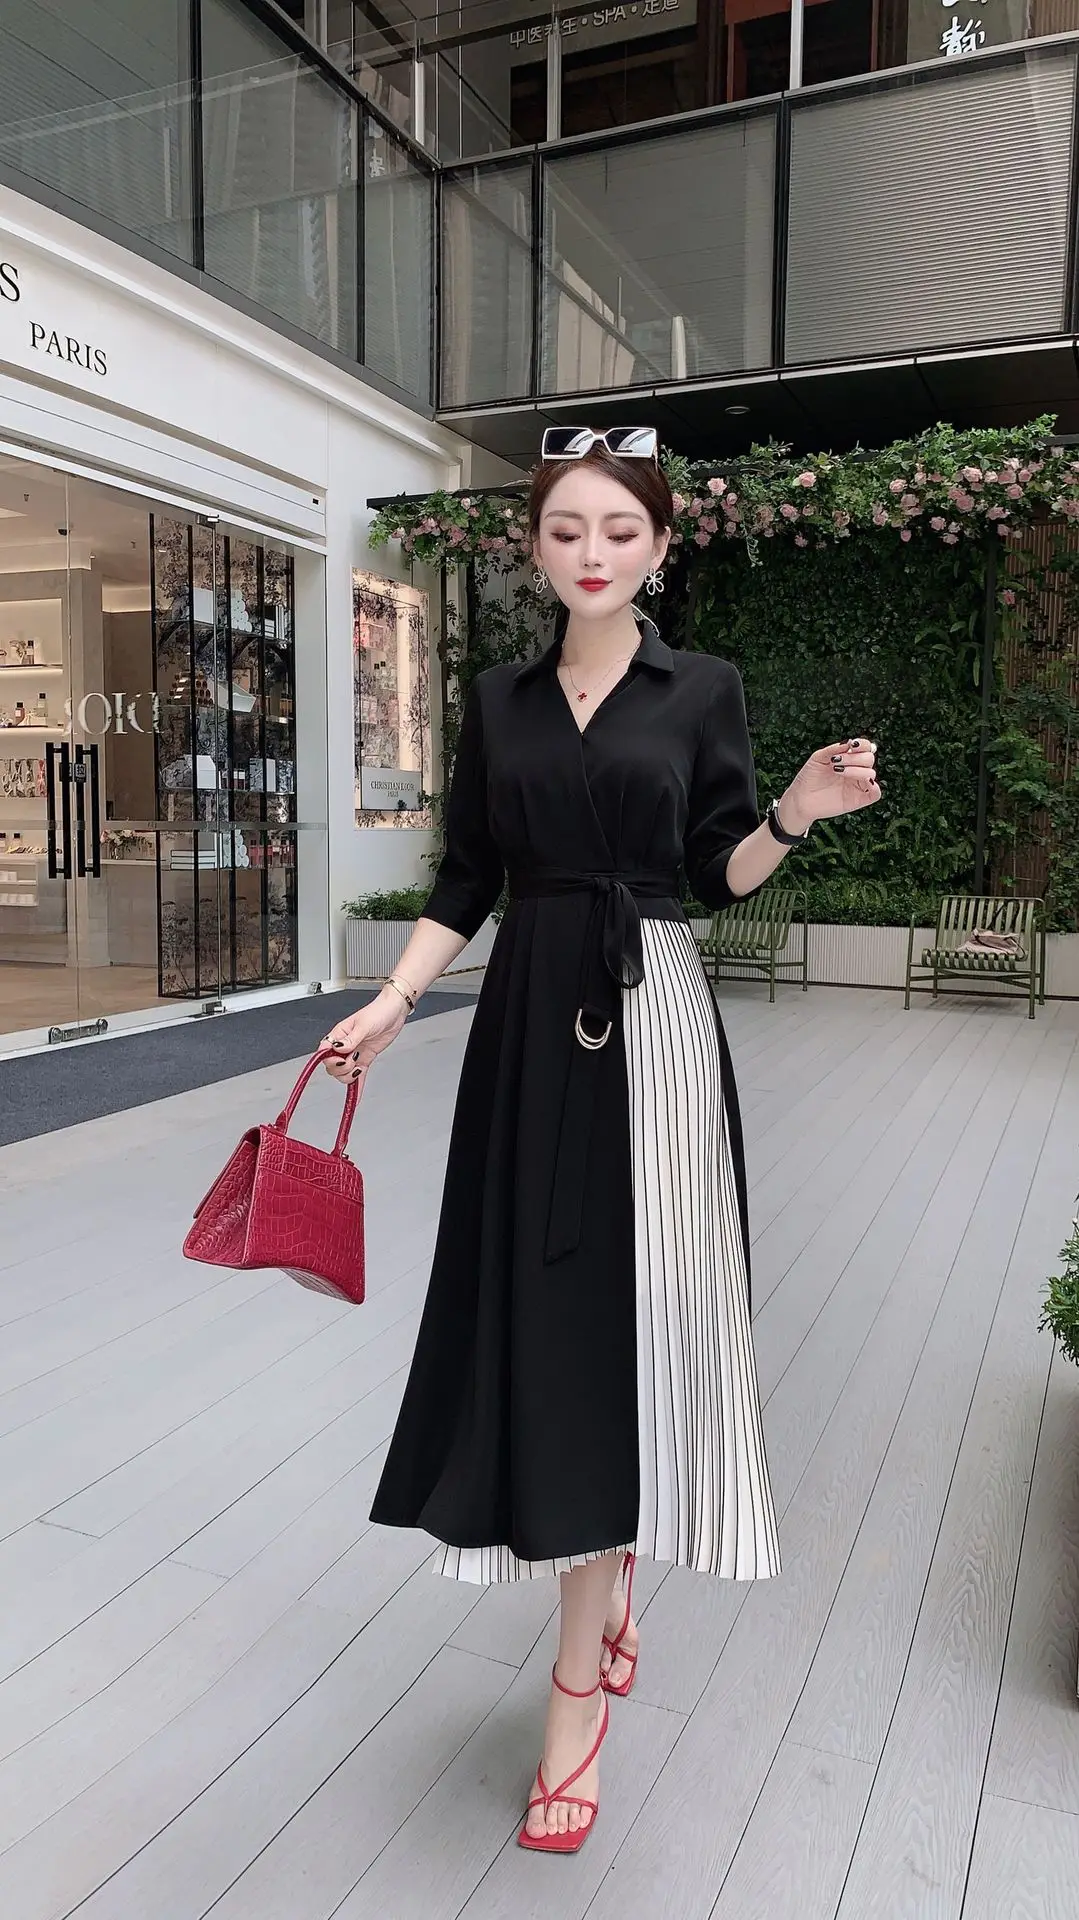 

Женское платье в стиле ампир, красное, черное платье без рукавов, из полиэстера, весна-лето 2021